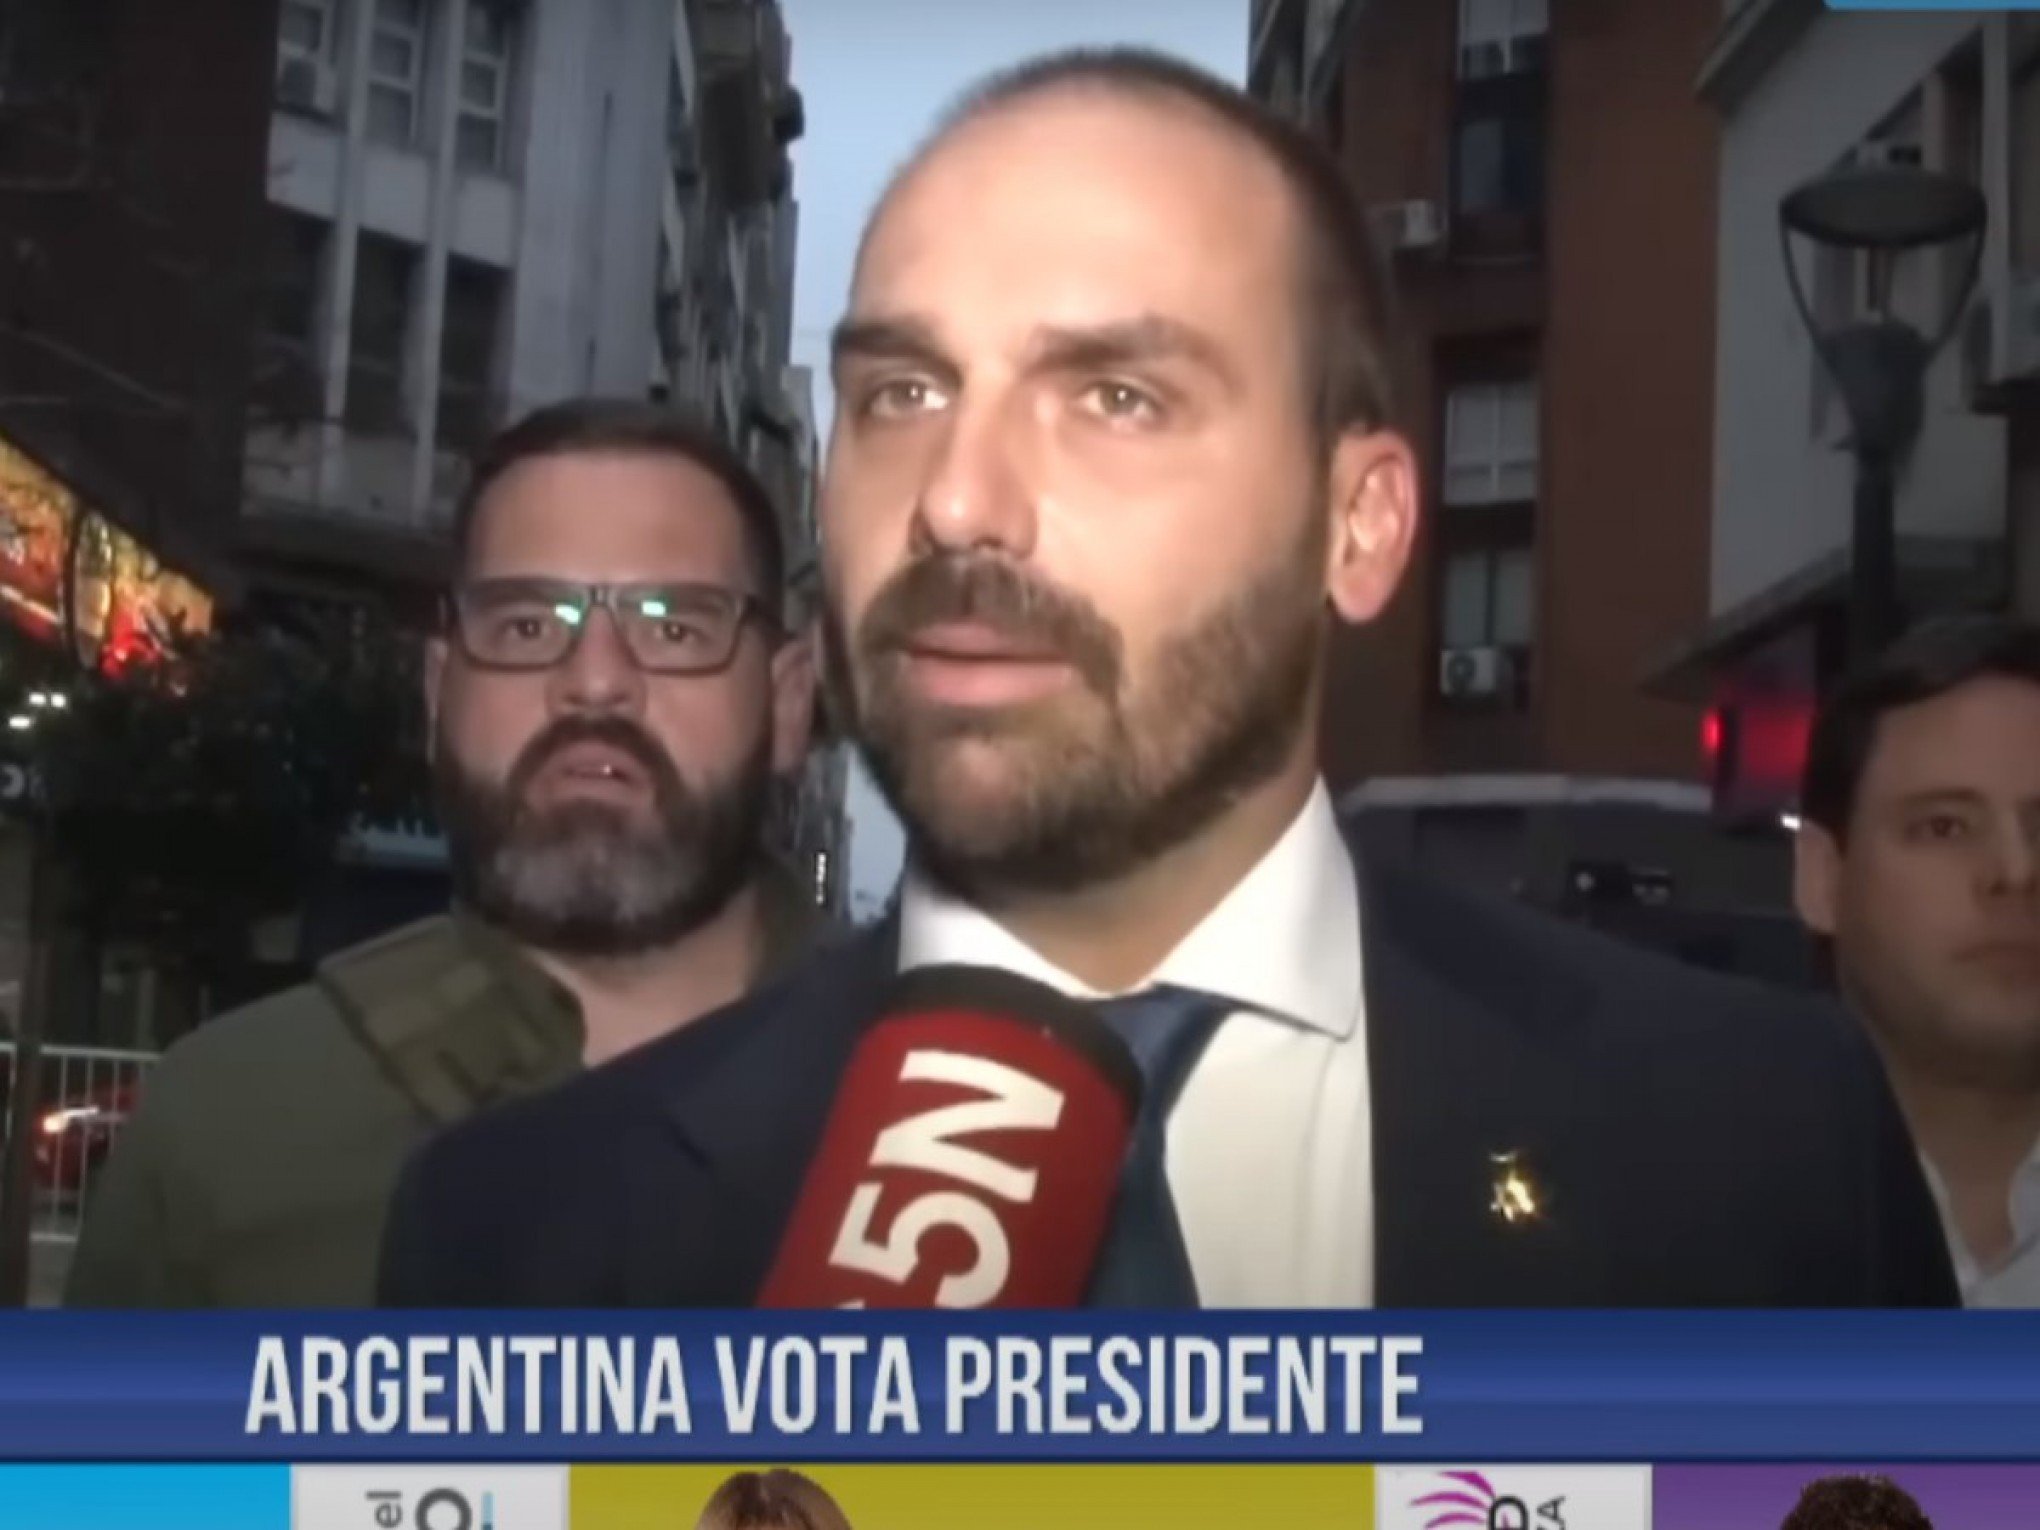 "Por isso tiraram o pai dele": Vídeo mostra momento em que Eduardo Bolsonaro é ironizado em TV argentina ao defender armas